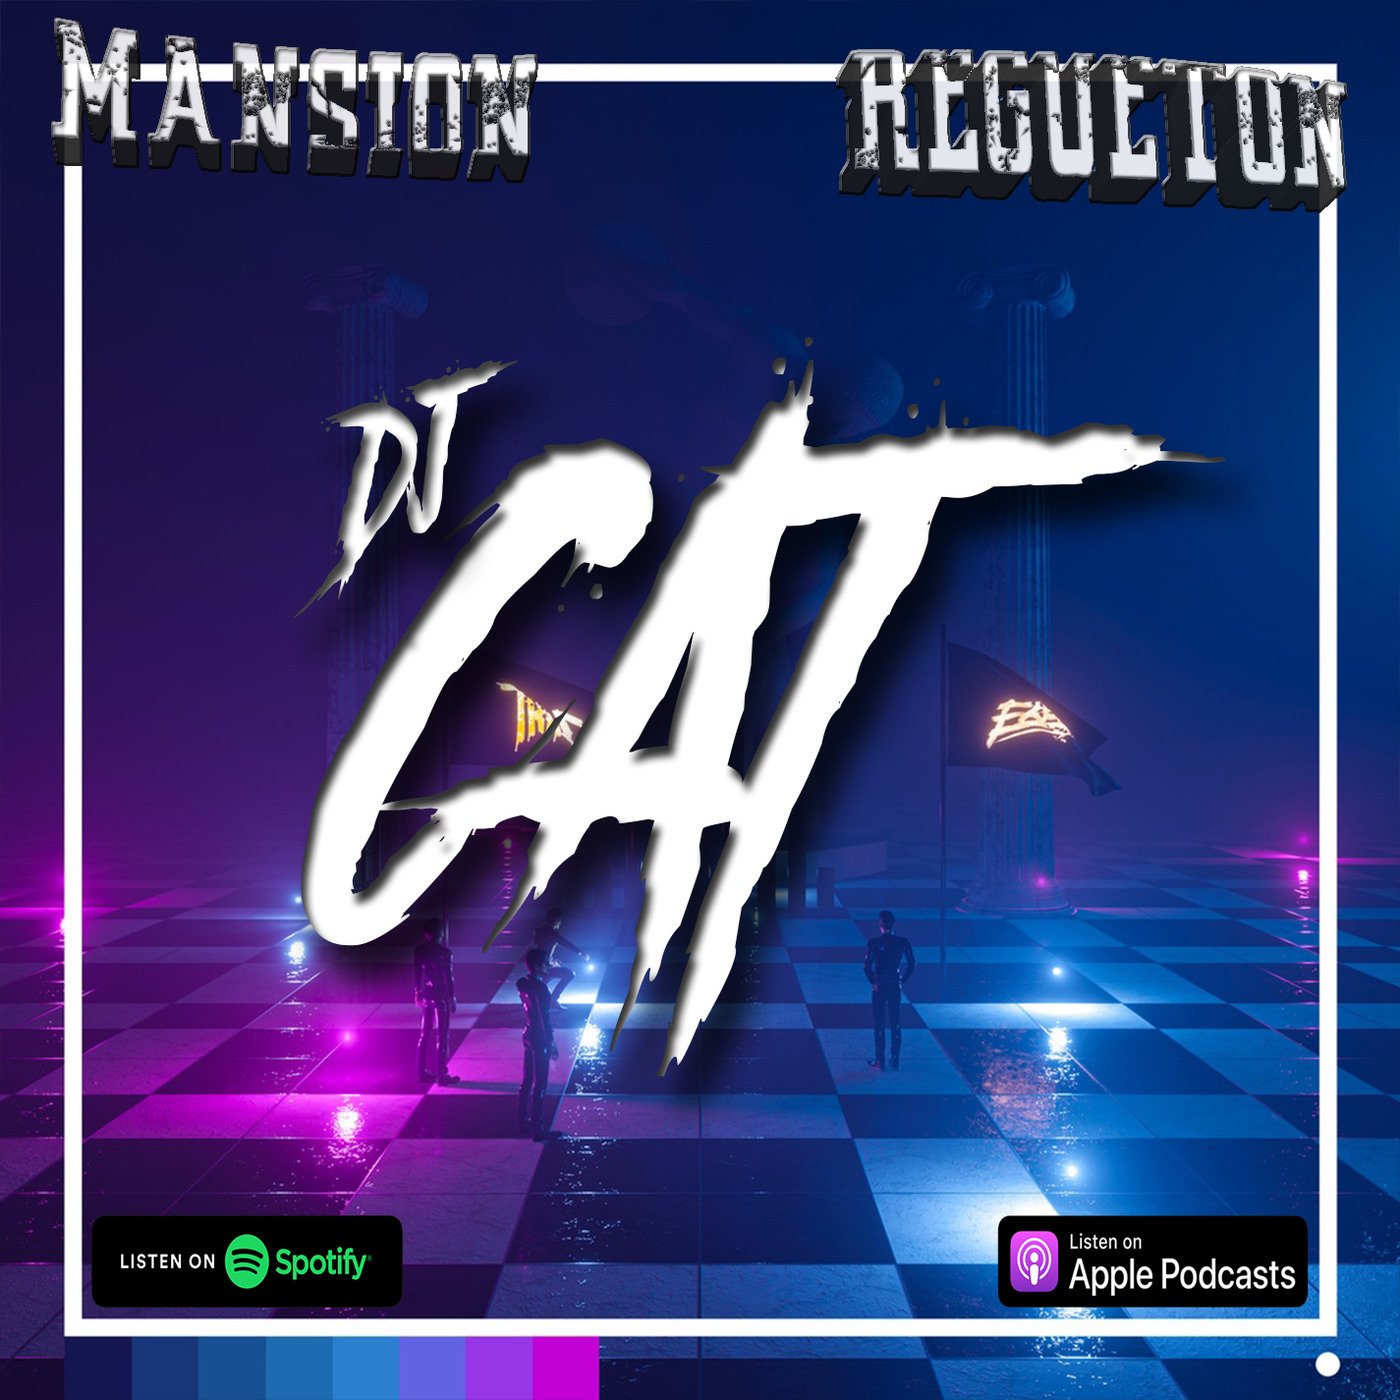 Regueton Mayo II 2020 por Dj CAT / CÓMO SE SIENTE, Amarillo, Sigues Con El, PA' ROMPERLA, Relación, La Jeepeta - Remix